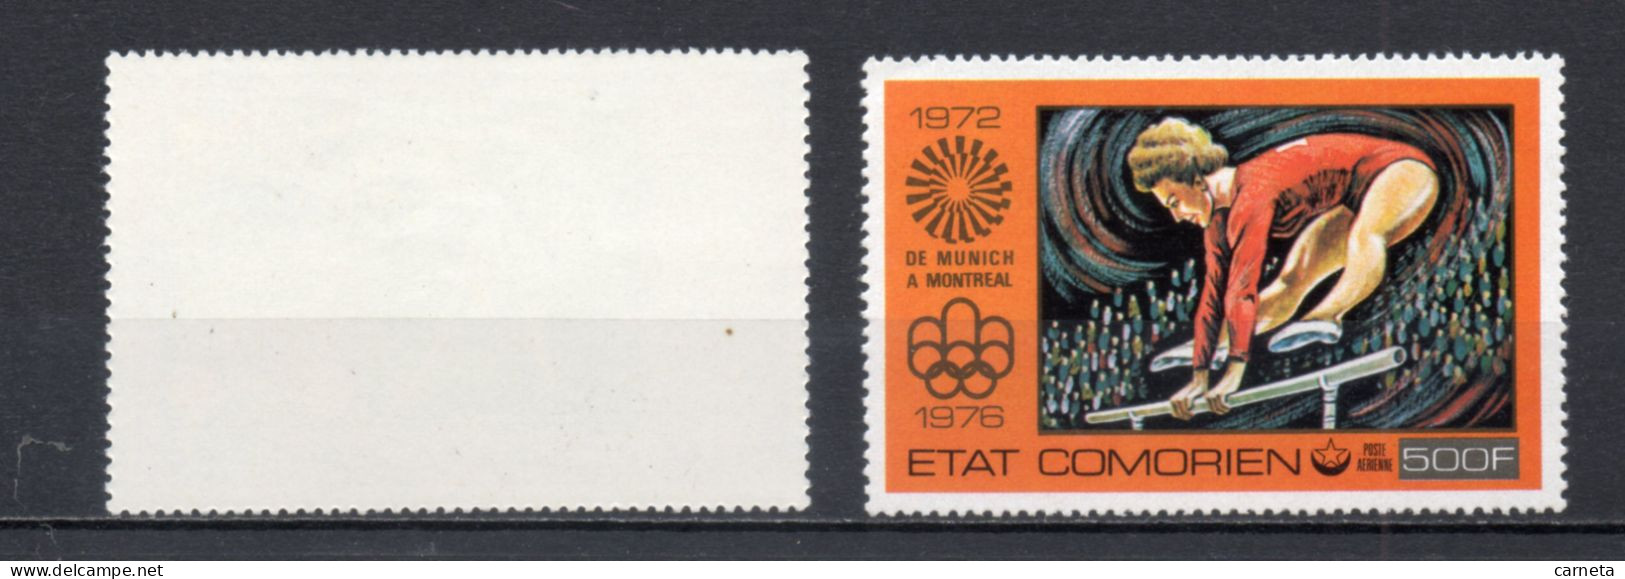 COMORES  PA N° 108 + 109   NEUFS SANS CHARNIERE COTE 7.00€   JEUX OLYMPIQUES MONTREAL  VOIR DESCRIPTION - Comores (1975-...)